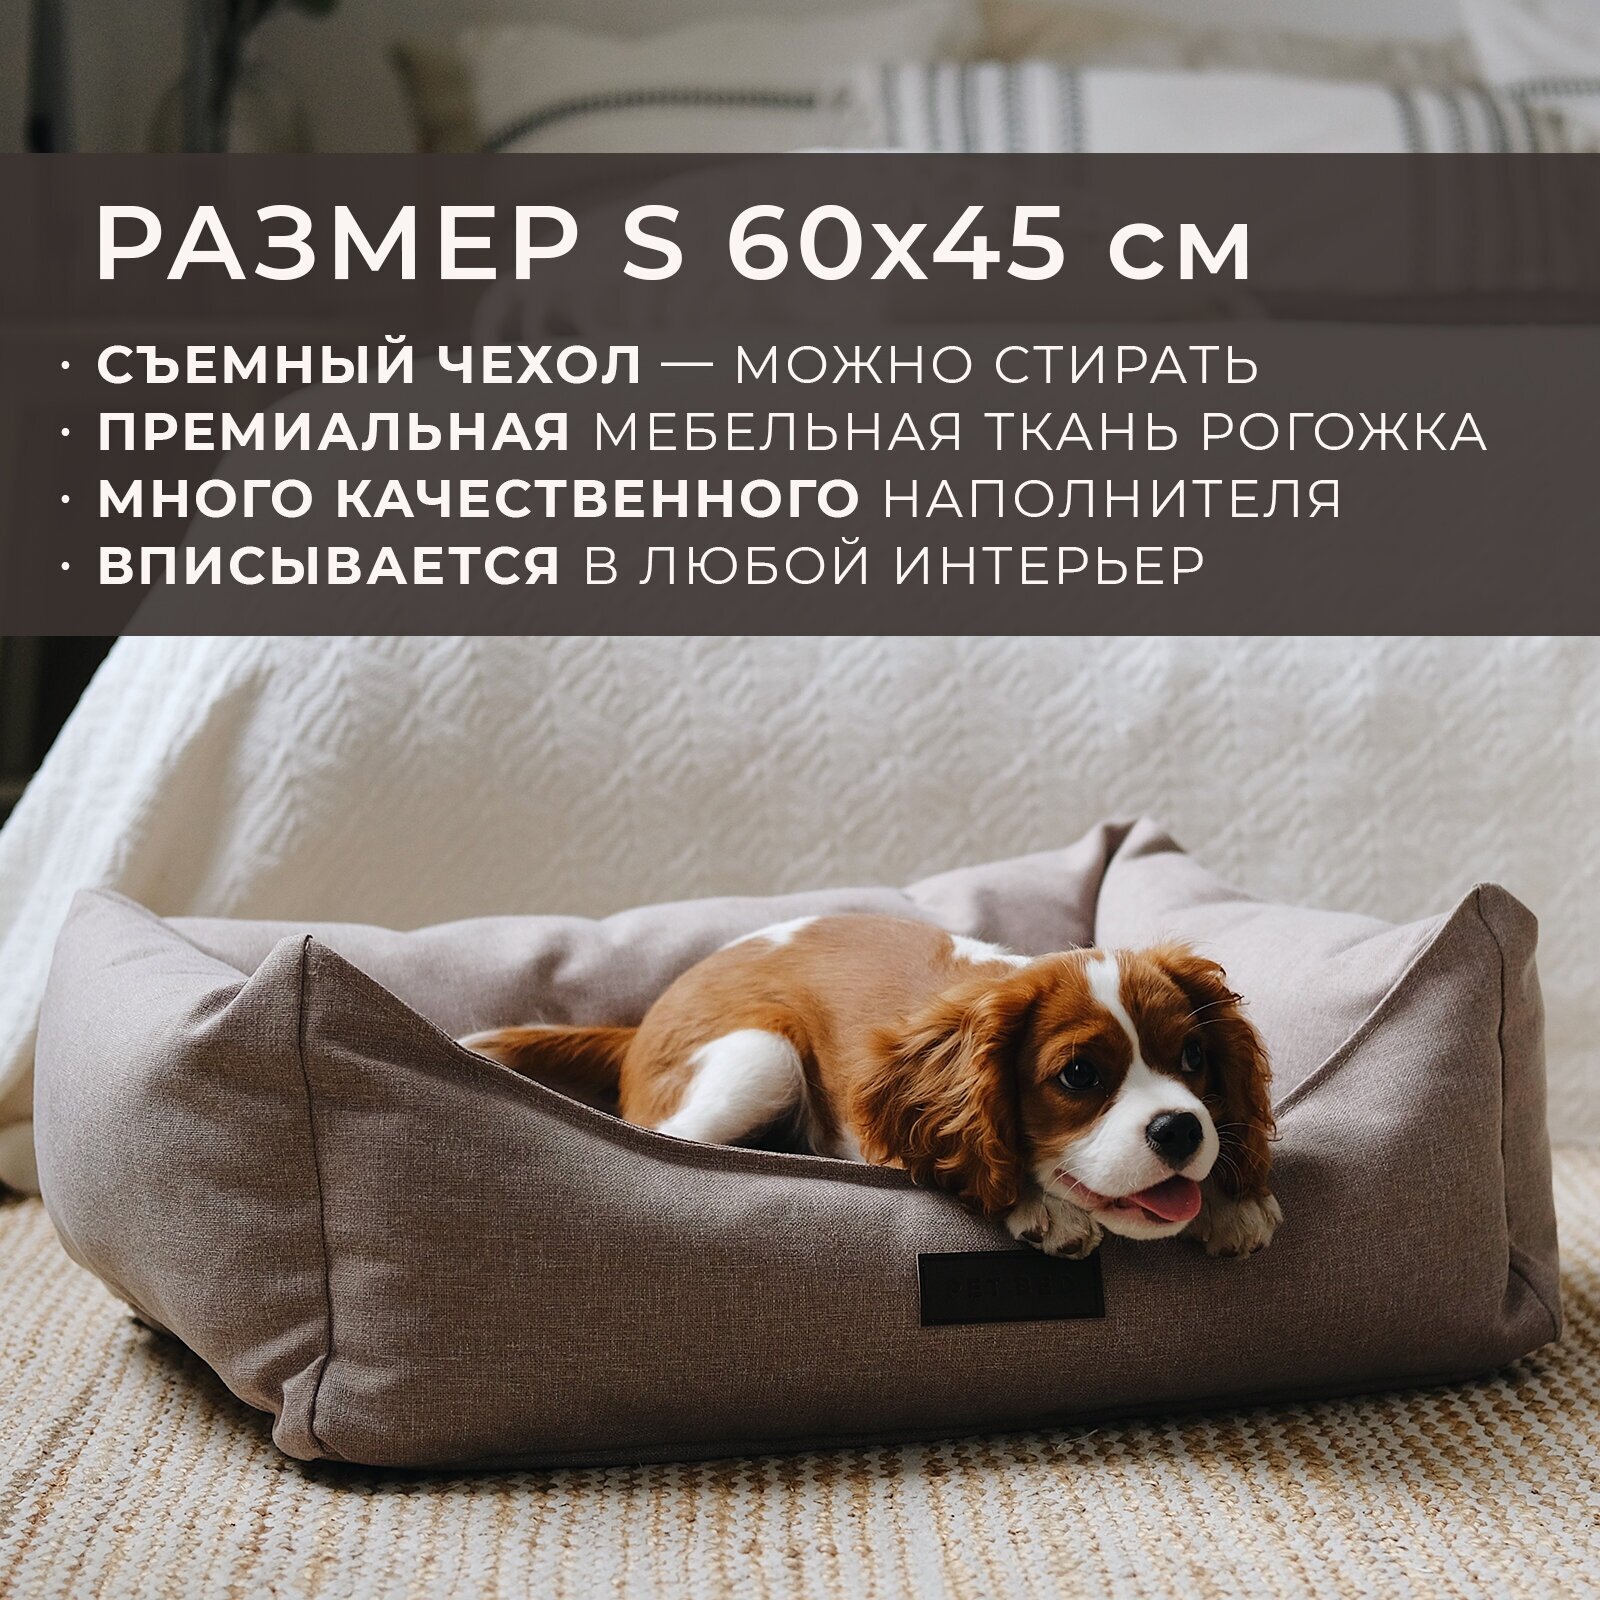 Лежанка для животных со съемным чехлом PET BED Рогожка, размер S 60х45 см, бежевая